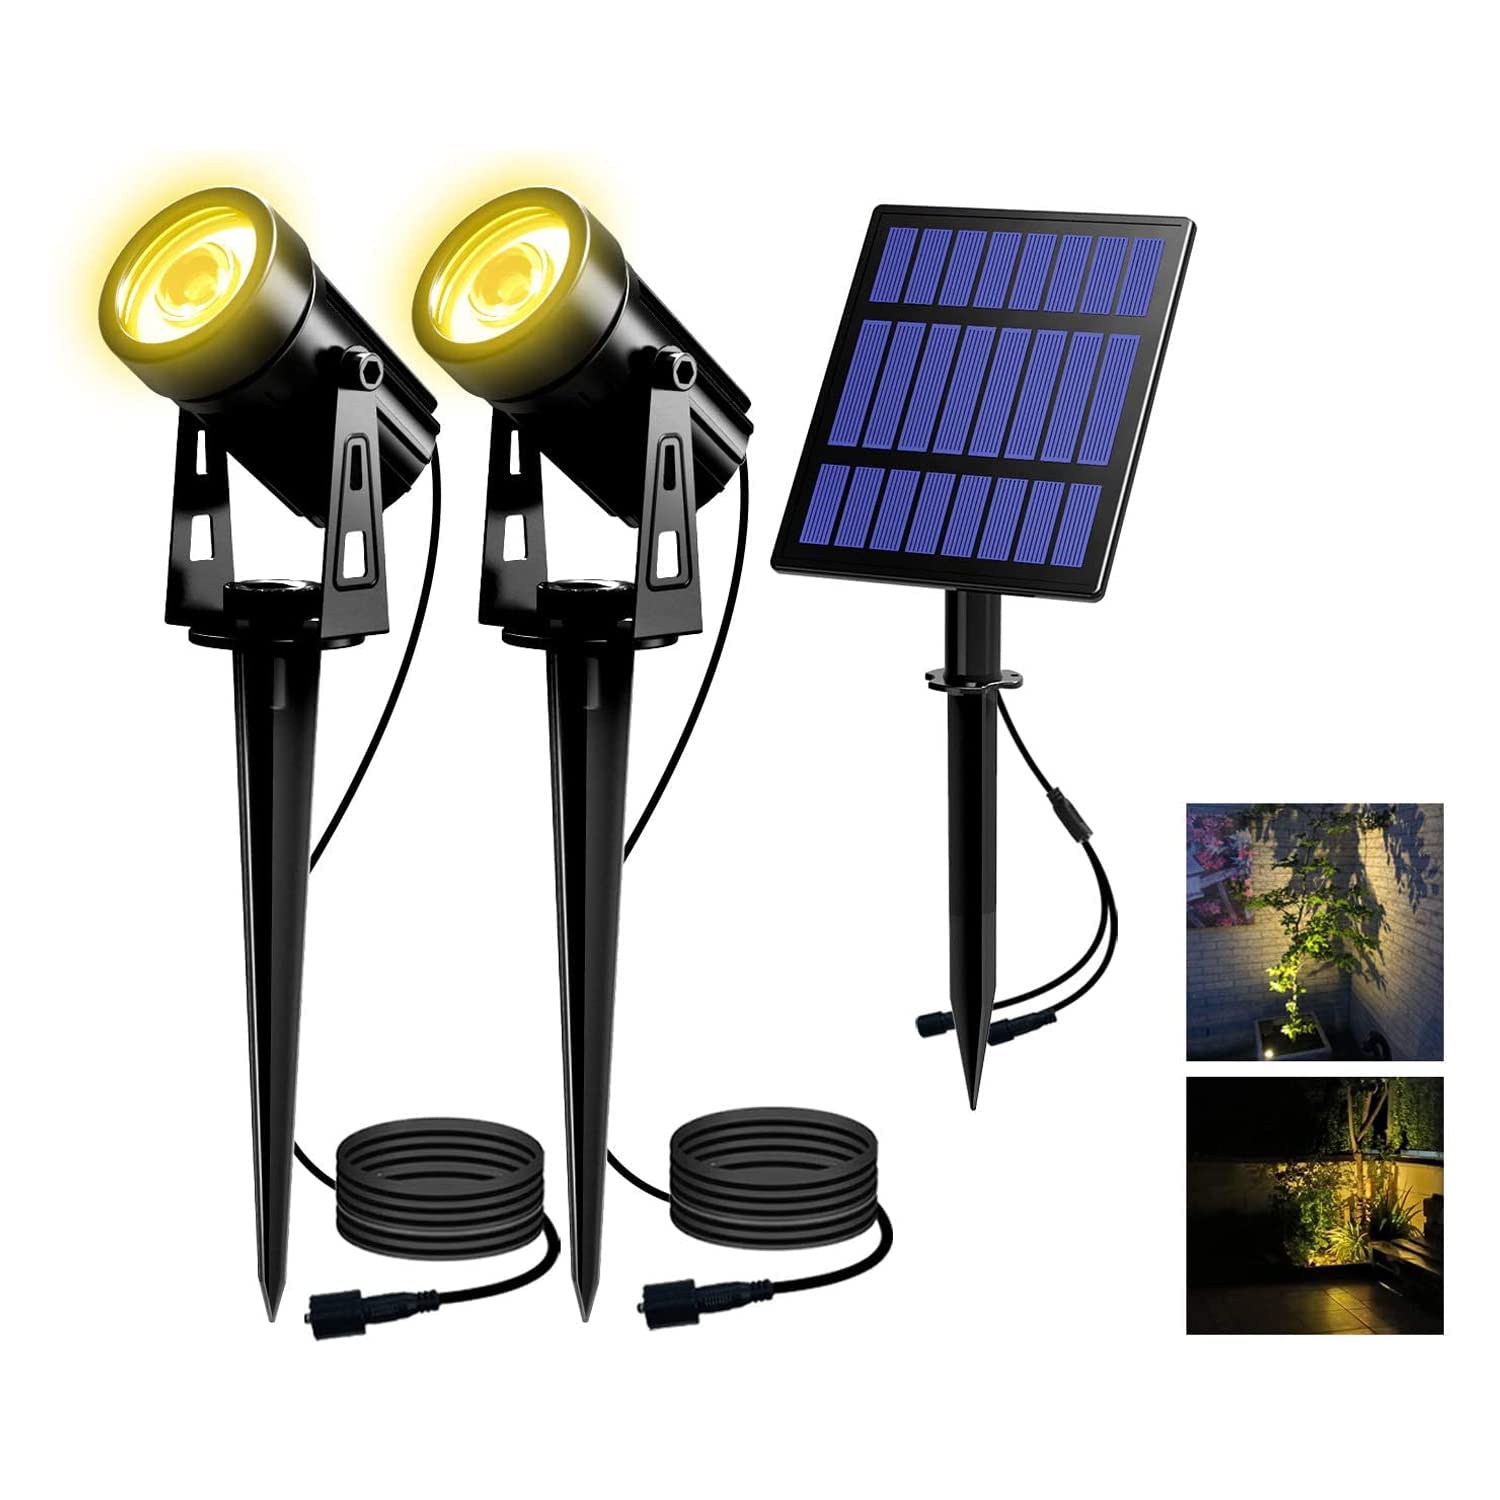 T-SUN Solar Gartenleuchte, 2 Stück Solarstrahler Solarlampen für garten, IP65 Wasserdicht LED Solarlampe mit 2 Helligkeitsstufe, 3 Meter Kabe,Auto-on/off für Bäume,Sträucher,Gartenweg(3000K Warmweiß)